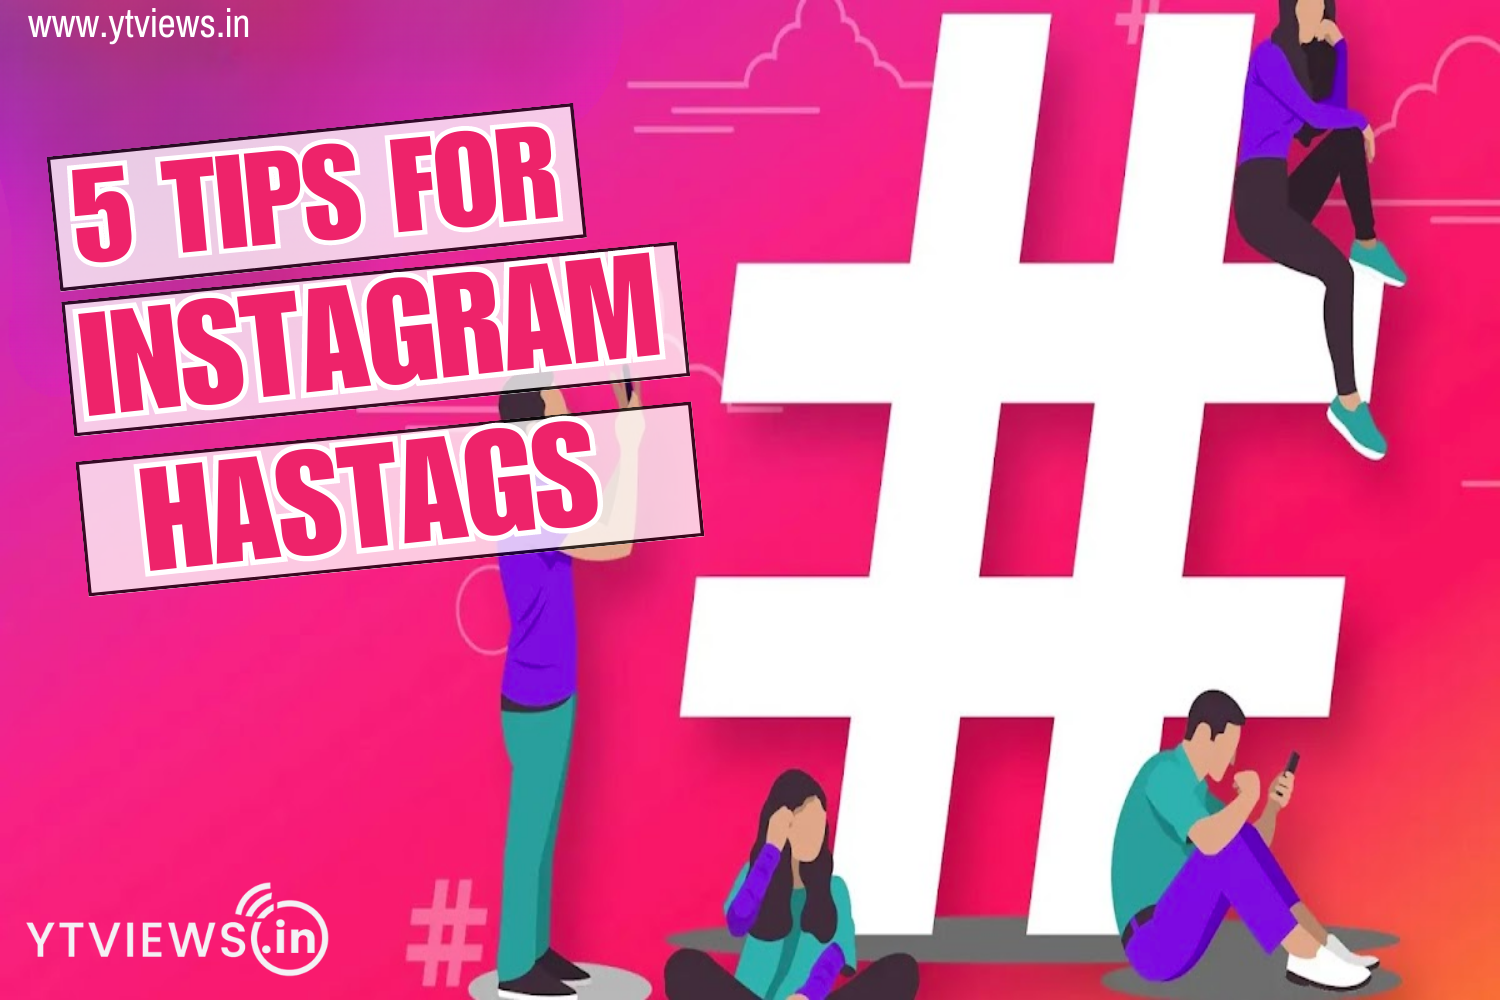 5 tips for Instagram hashtags